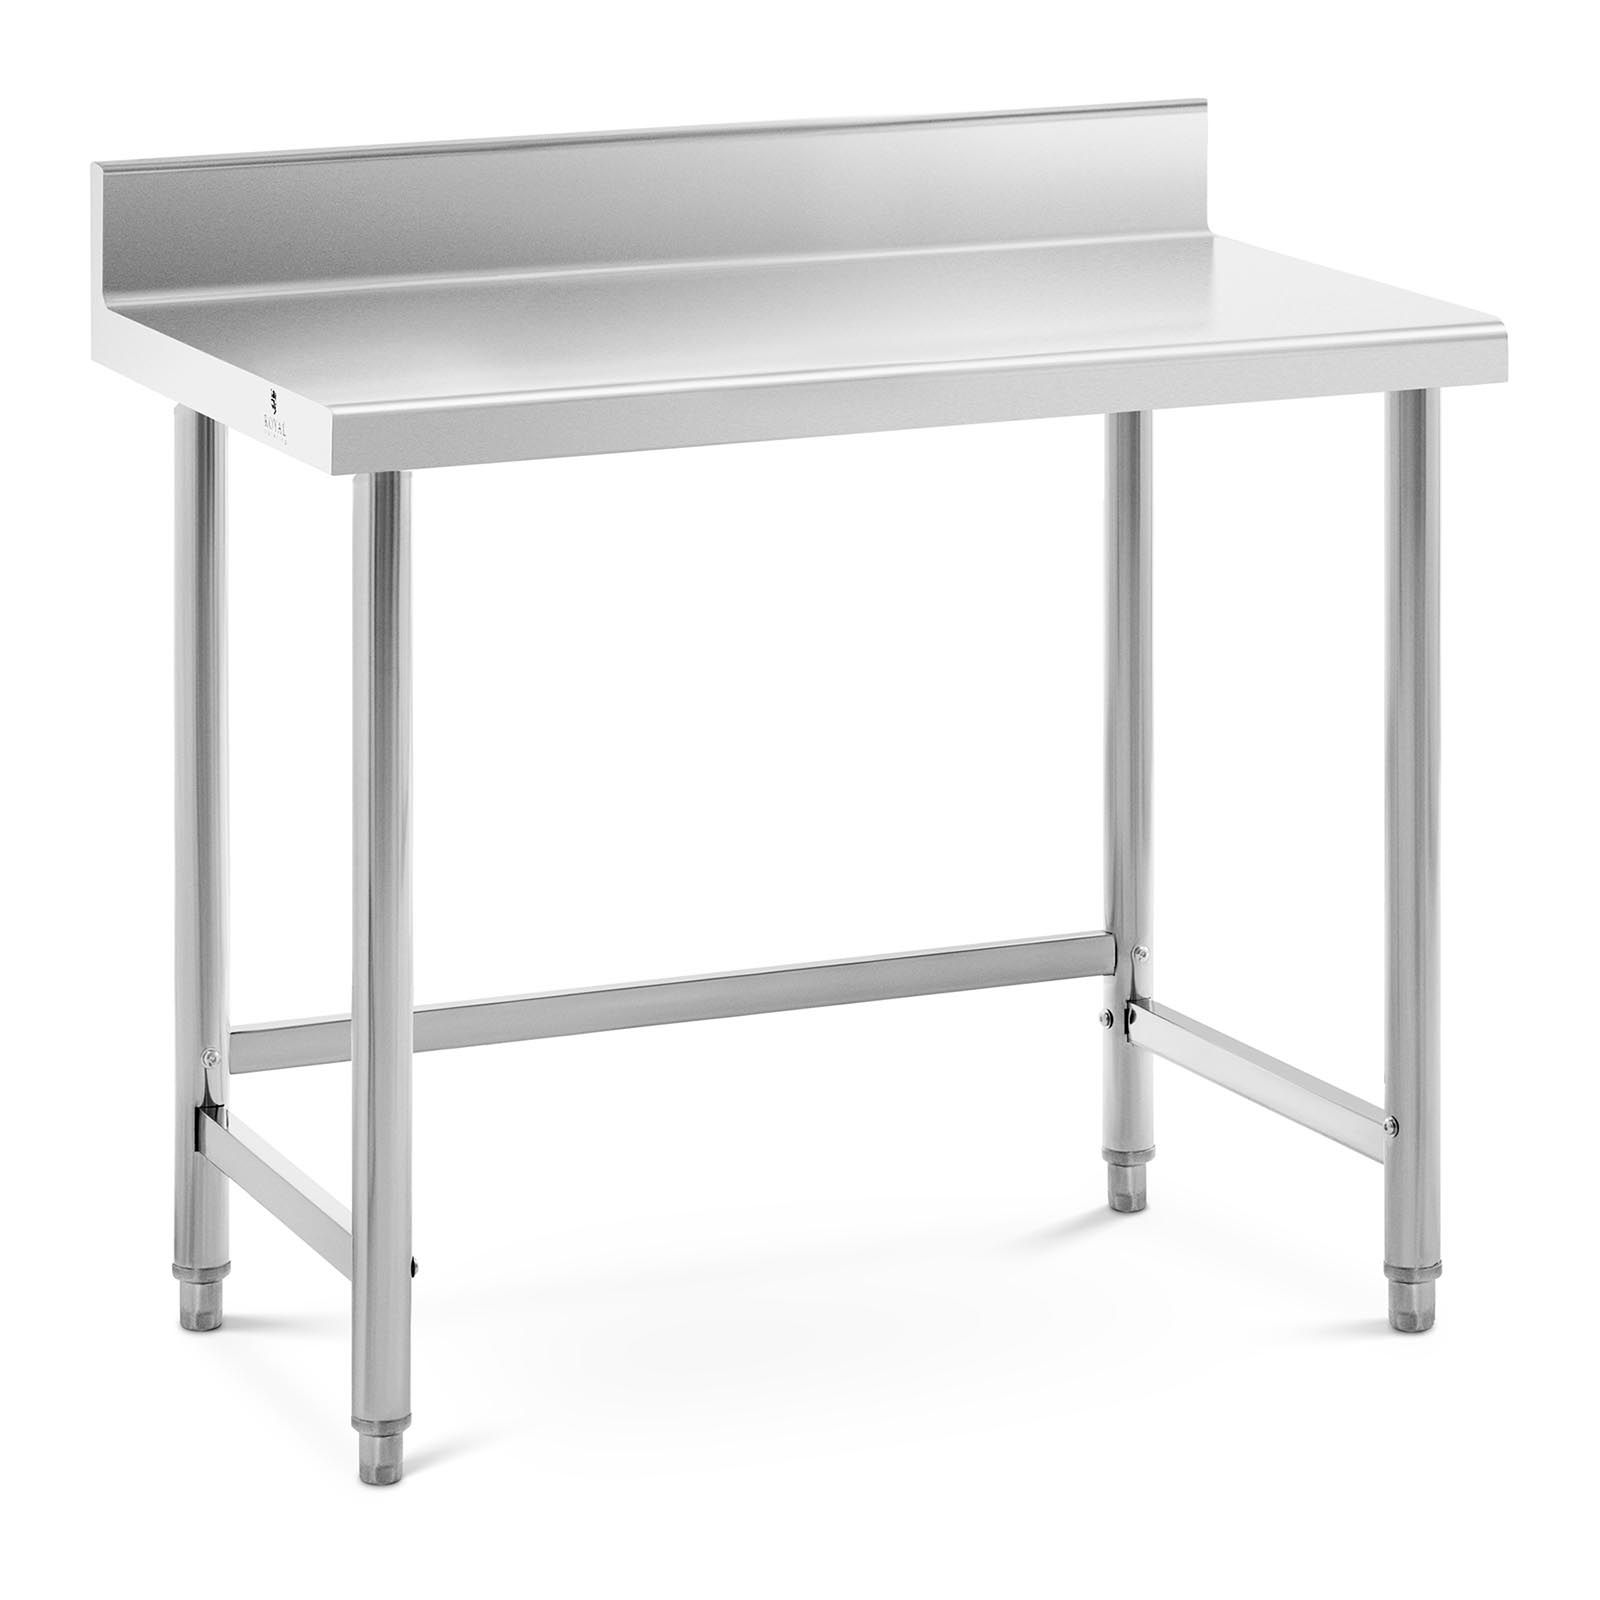 Pracovní stůl z ušlechtilé oceli 100 x 60 cm lem nosnost 90 kg - Pracovní stoly Royal Catering